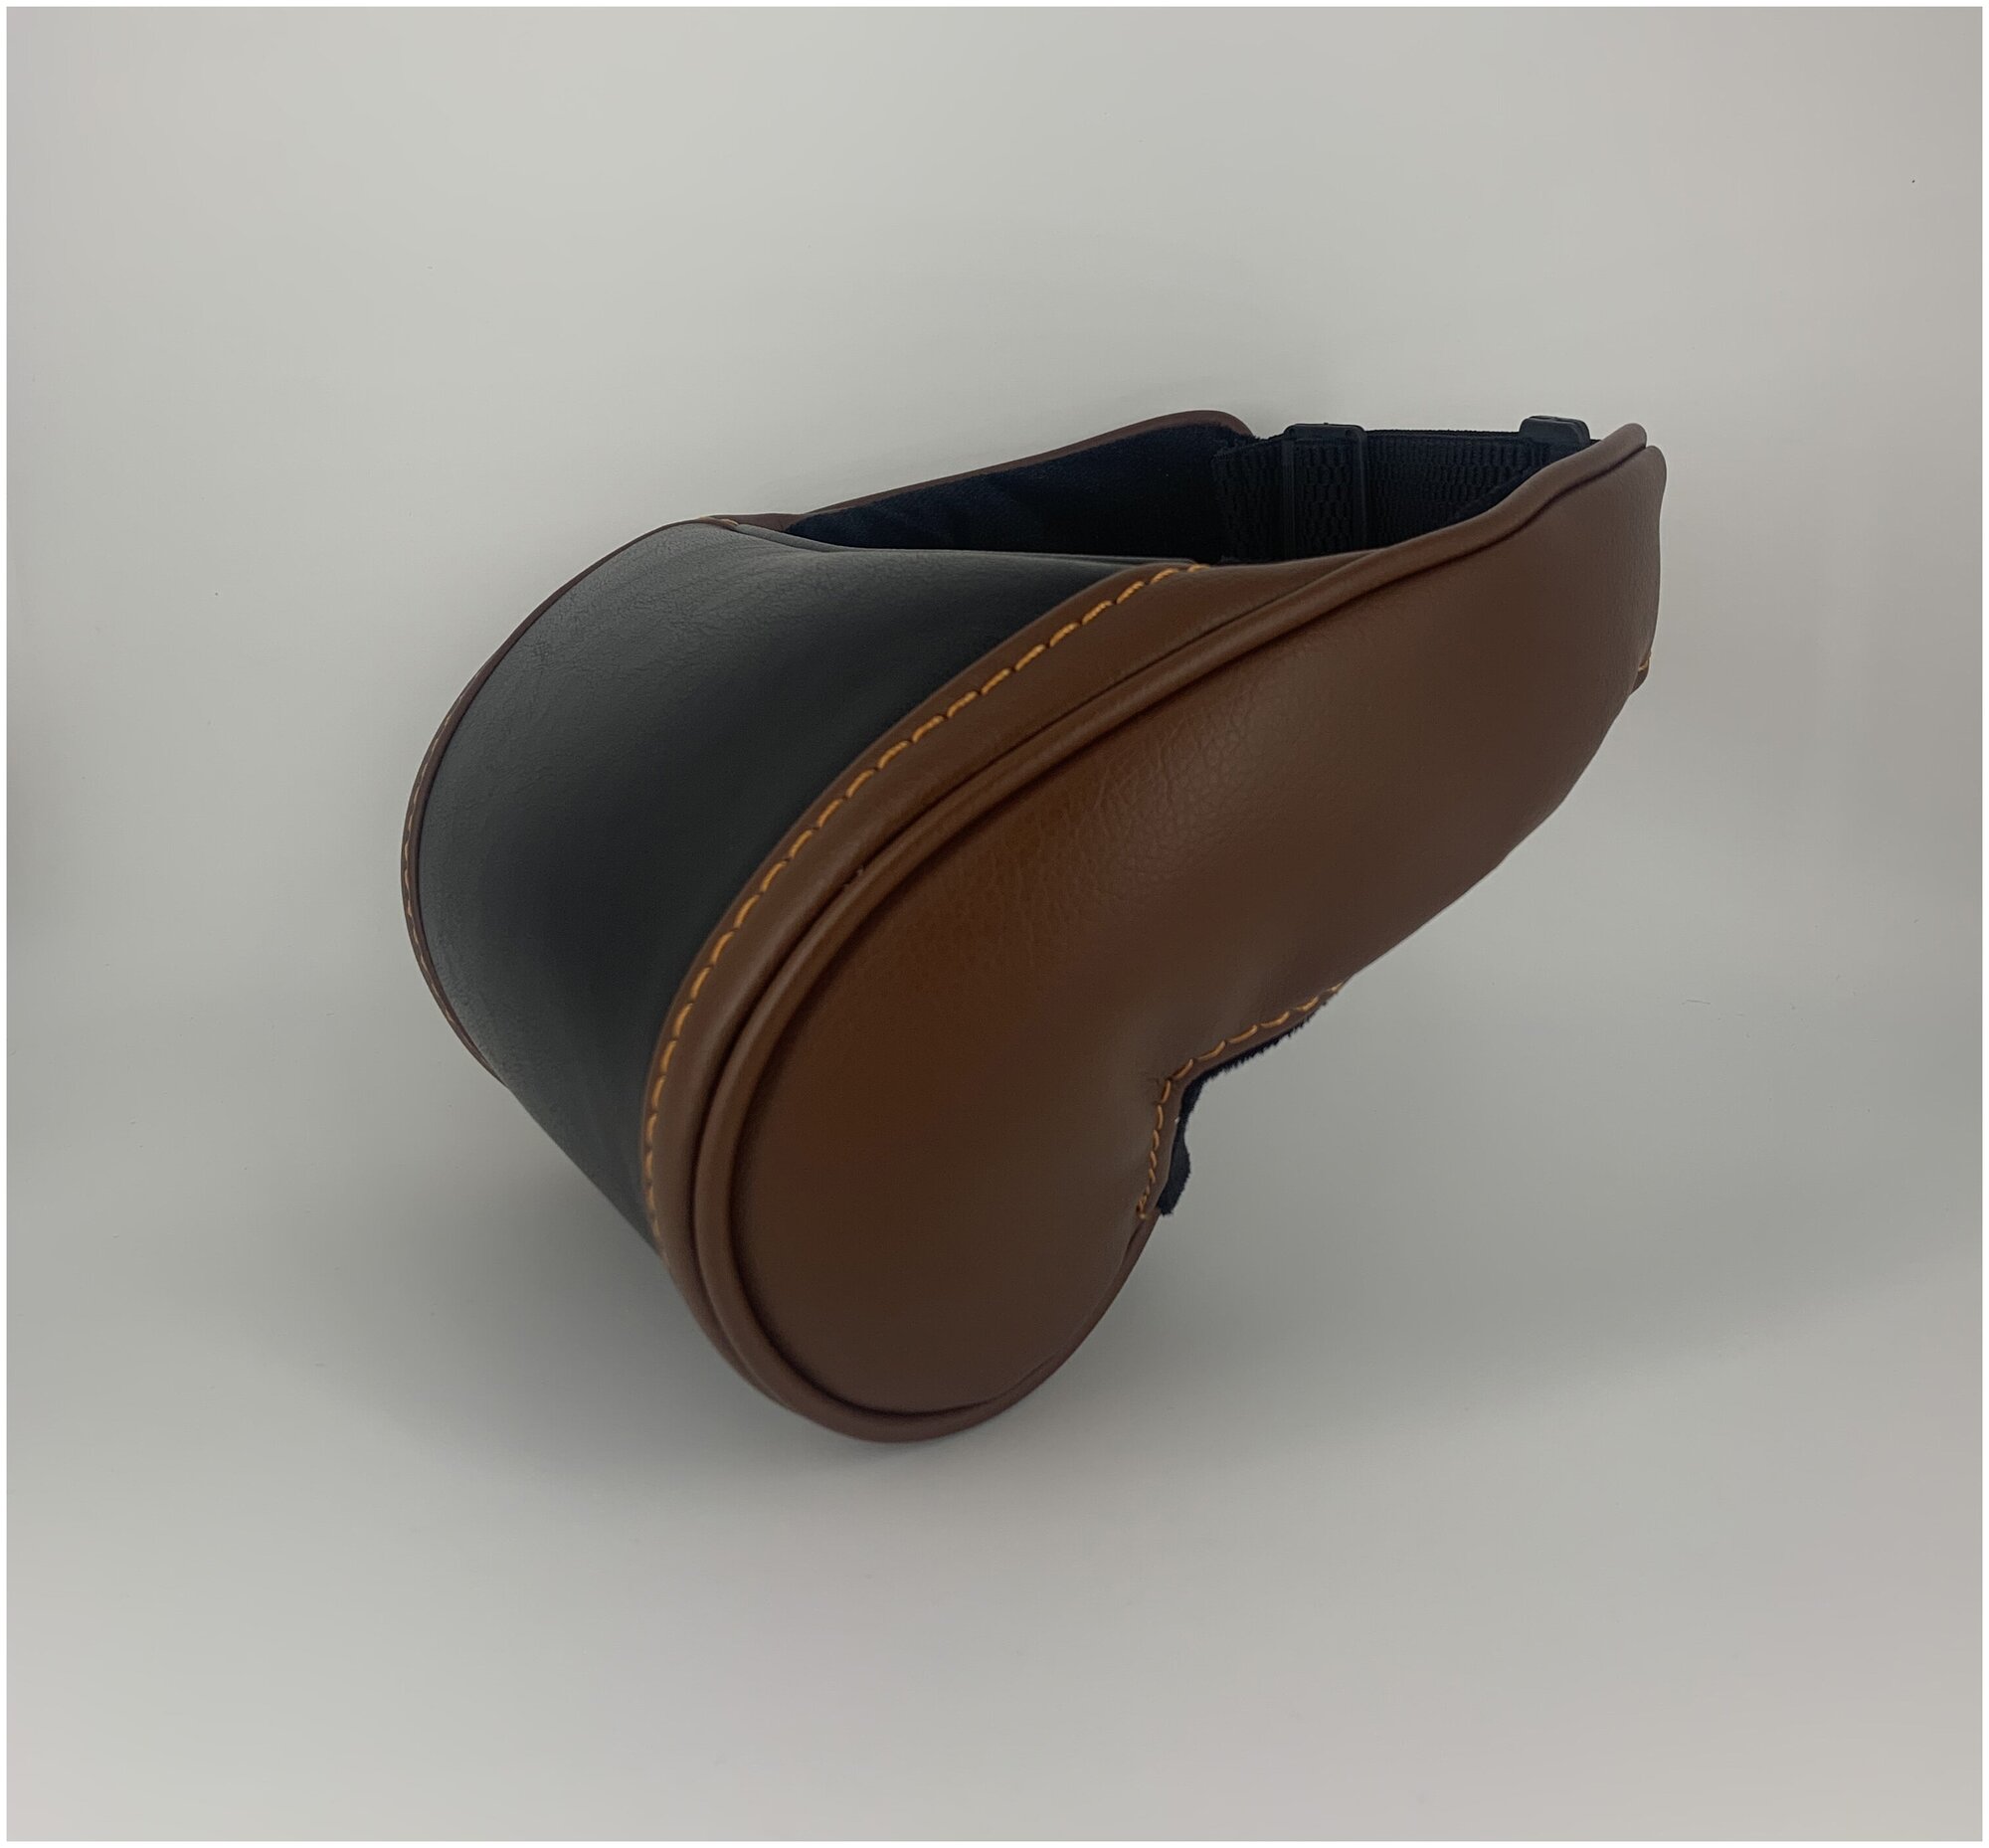 Черная автомобильная ортопедическая подушка для шеи на подголовник на сиденье с вставками коричневого цвета по бокам. Экокожа премиум класса.